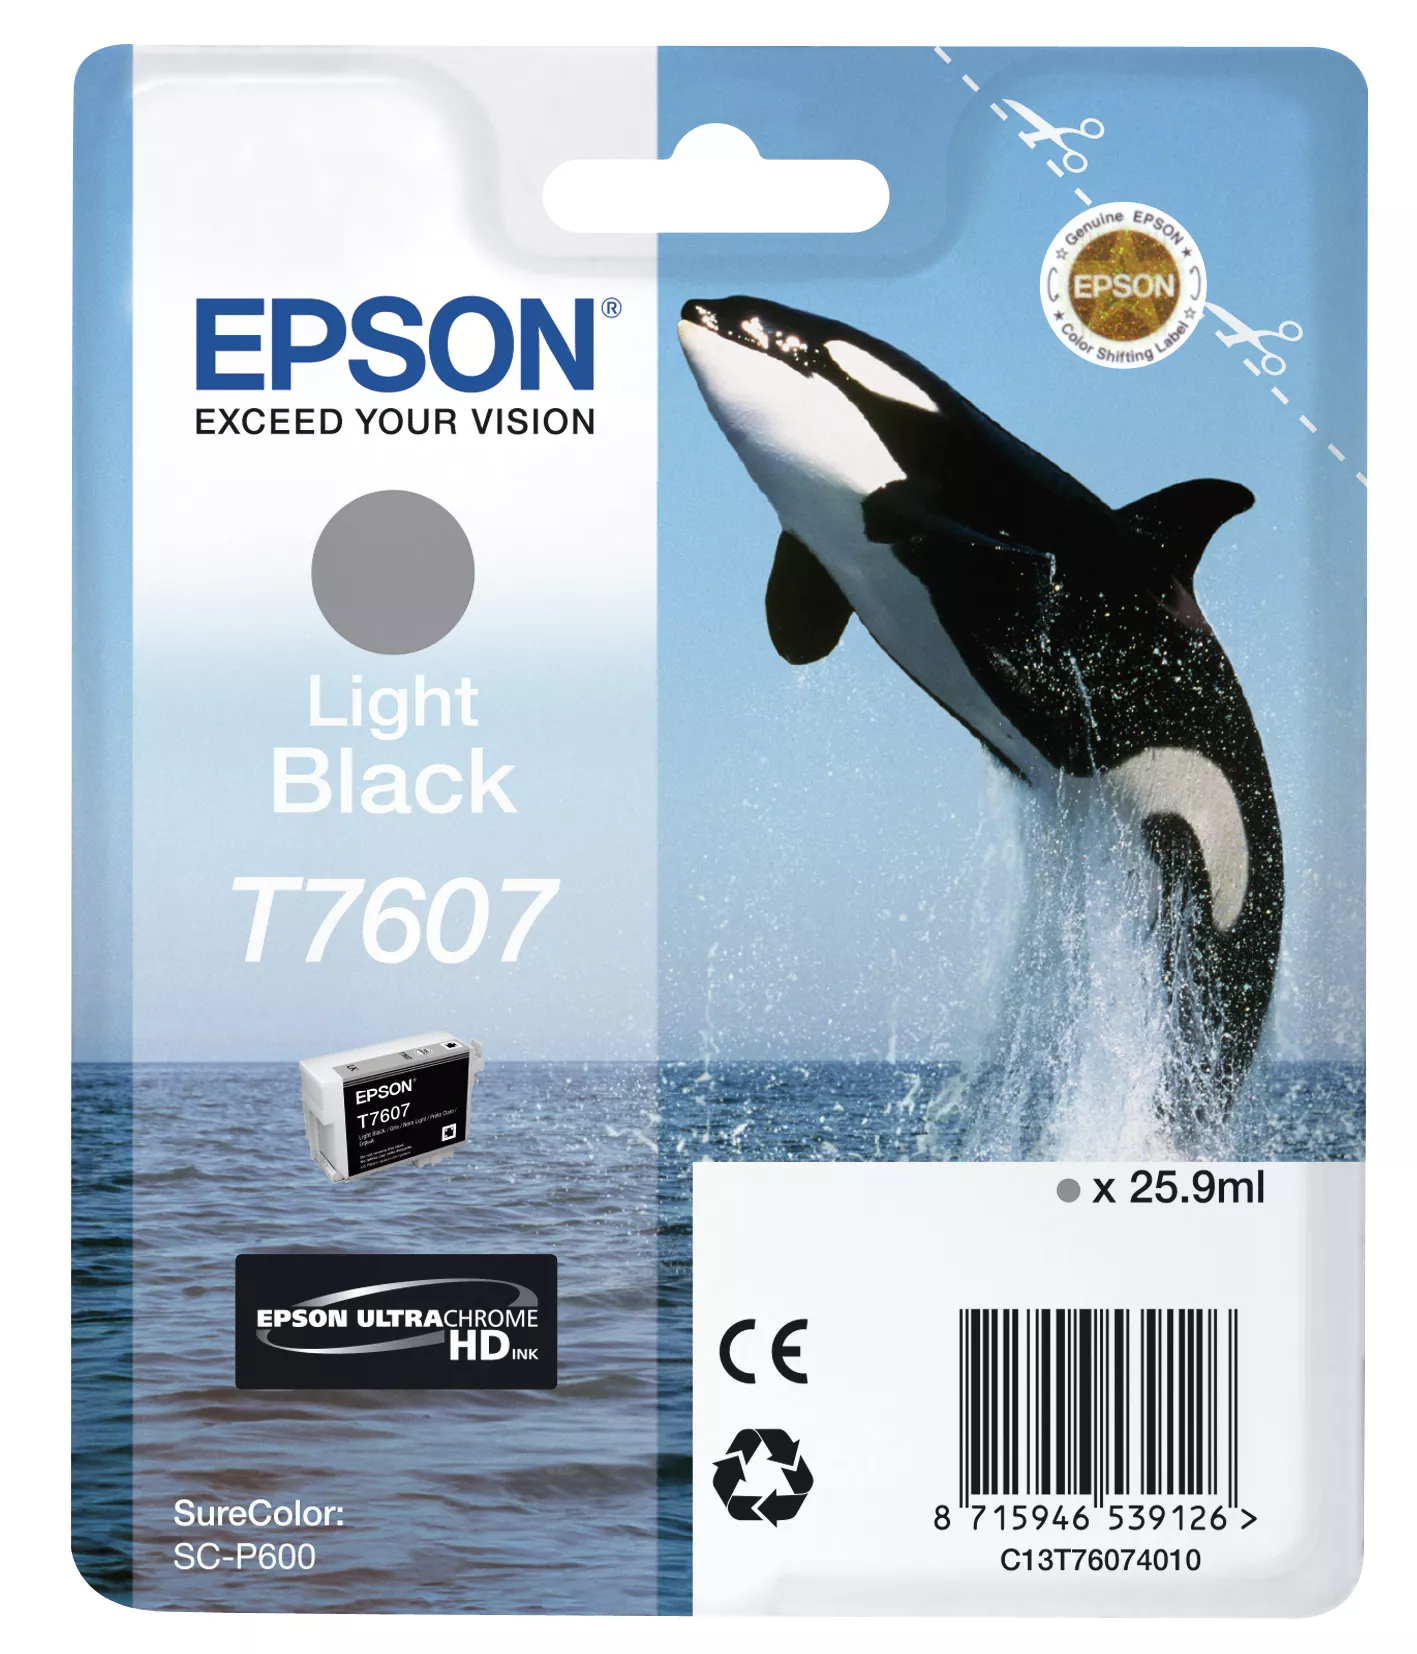 Achat EPSON T7607 cartouche dencre noir clair haute capacité 25 - 8715946539126